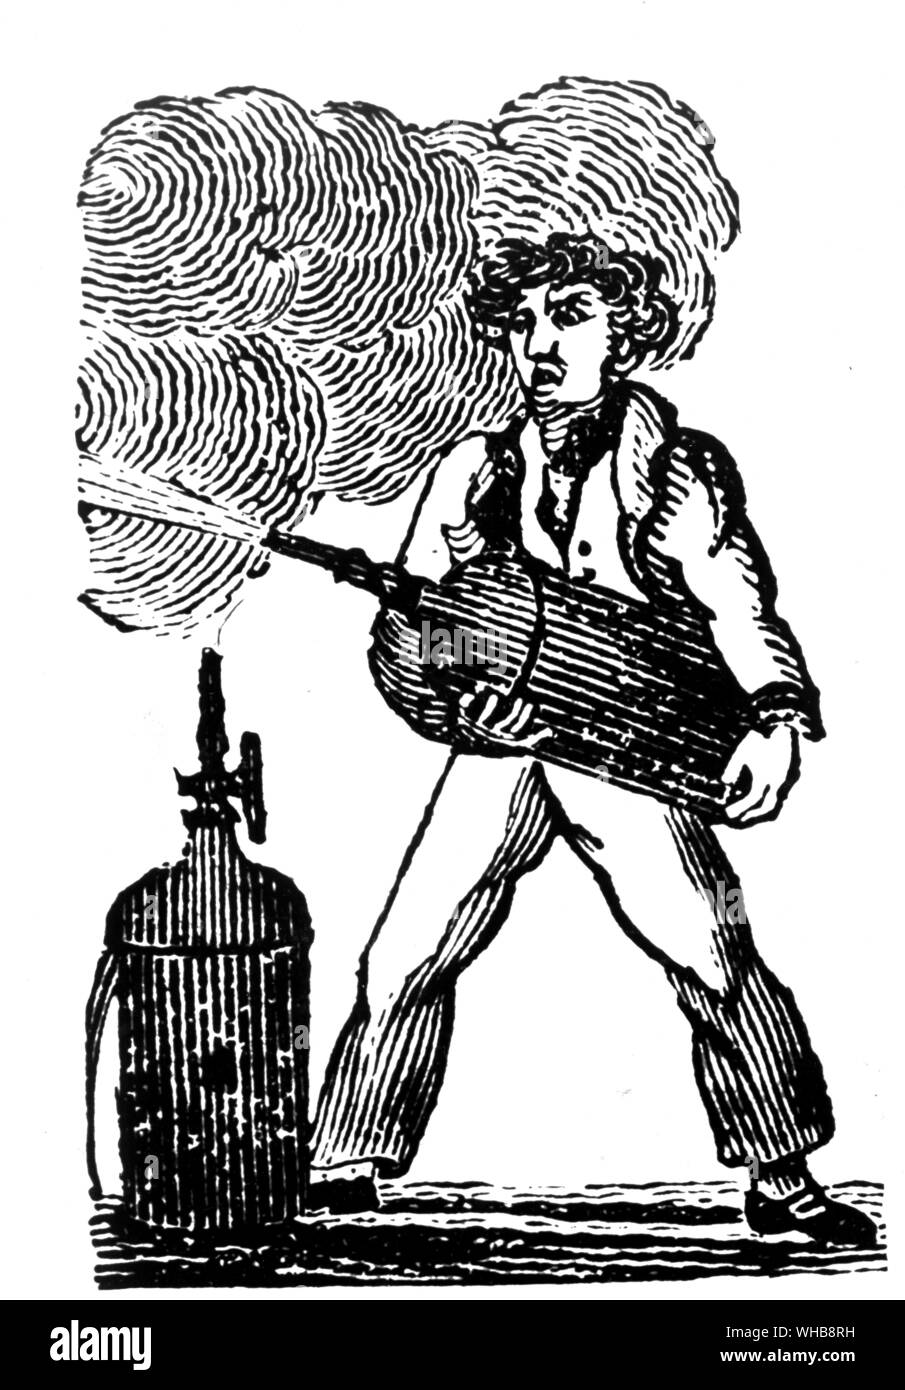 L'invention du capitaine Manby 1816 par courtoisie de la Fire Protection Association, Londres - Le Capitaine William George Manby (né le 28 novembre 1765 à Denver, Norfolk, Angleterre. décédée le 18 novembre 1854 à Great Yarmouth) est l'inventeur de l'extincteur portable entre autres choses.. Banque D'Images